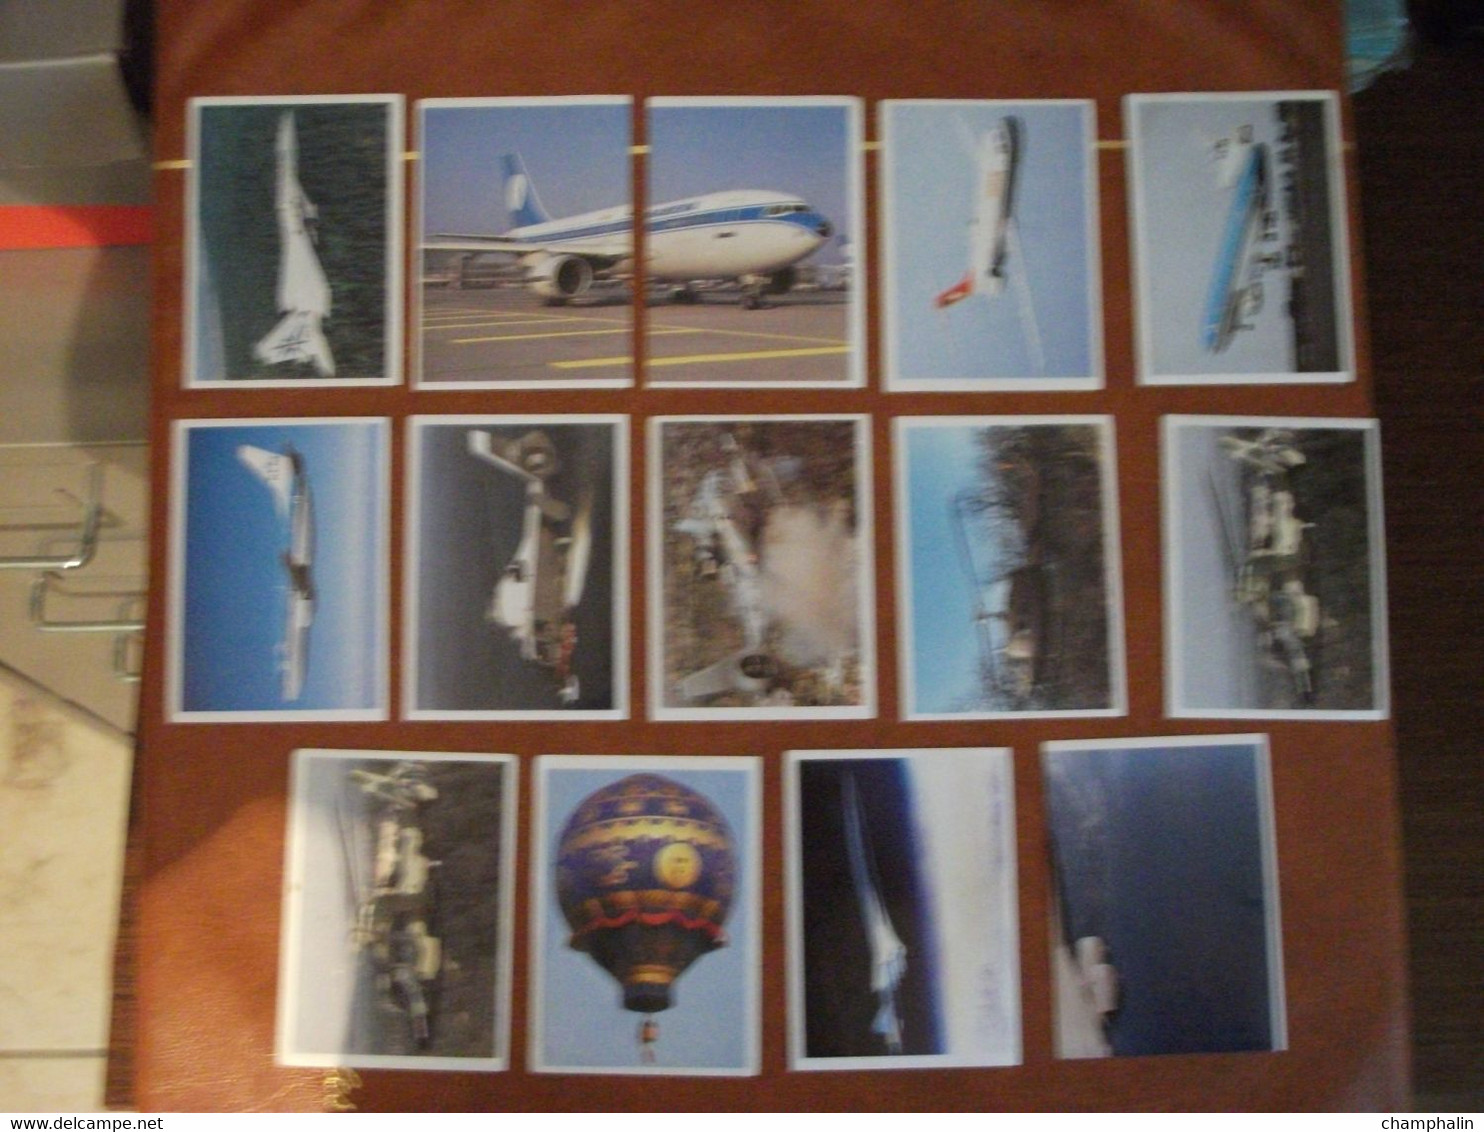 Avions - Lot De 14 Vignettes Autocollantes Panini Pour Album - Années 90 - Voir Liste - Planes Flugzeuge Aerei Aviones - Stickers